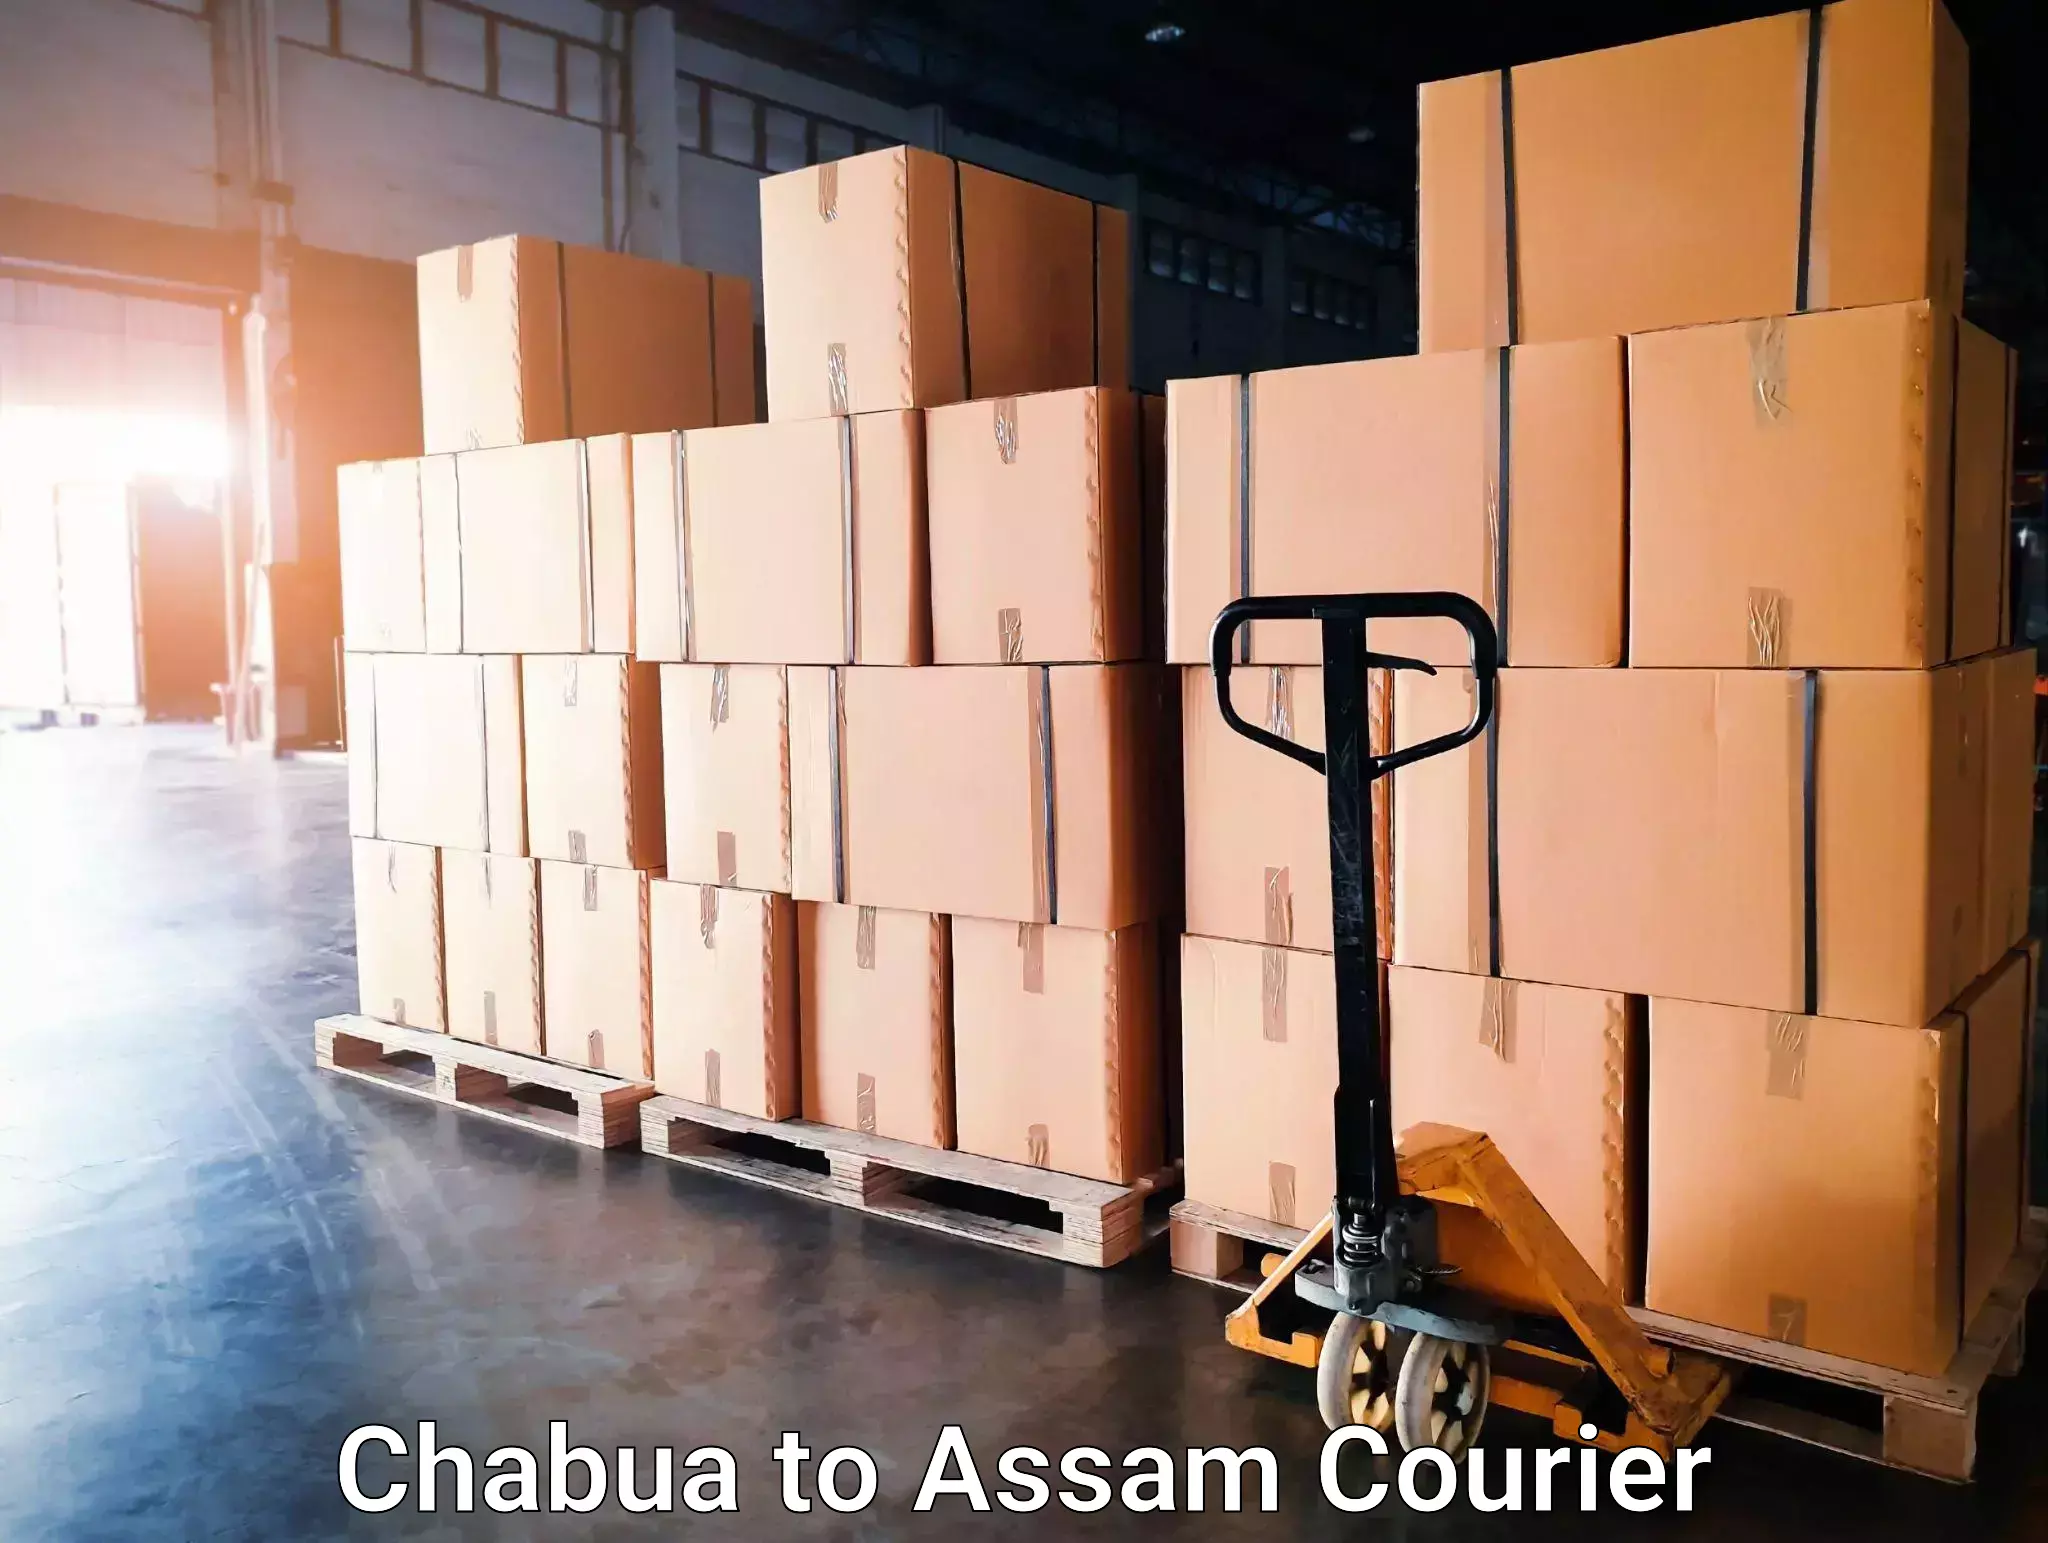 24-hour courier service Chabua to Assam